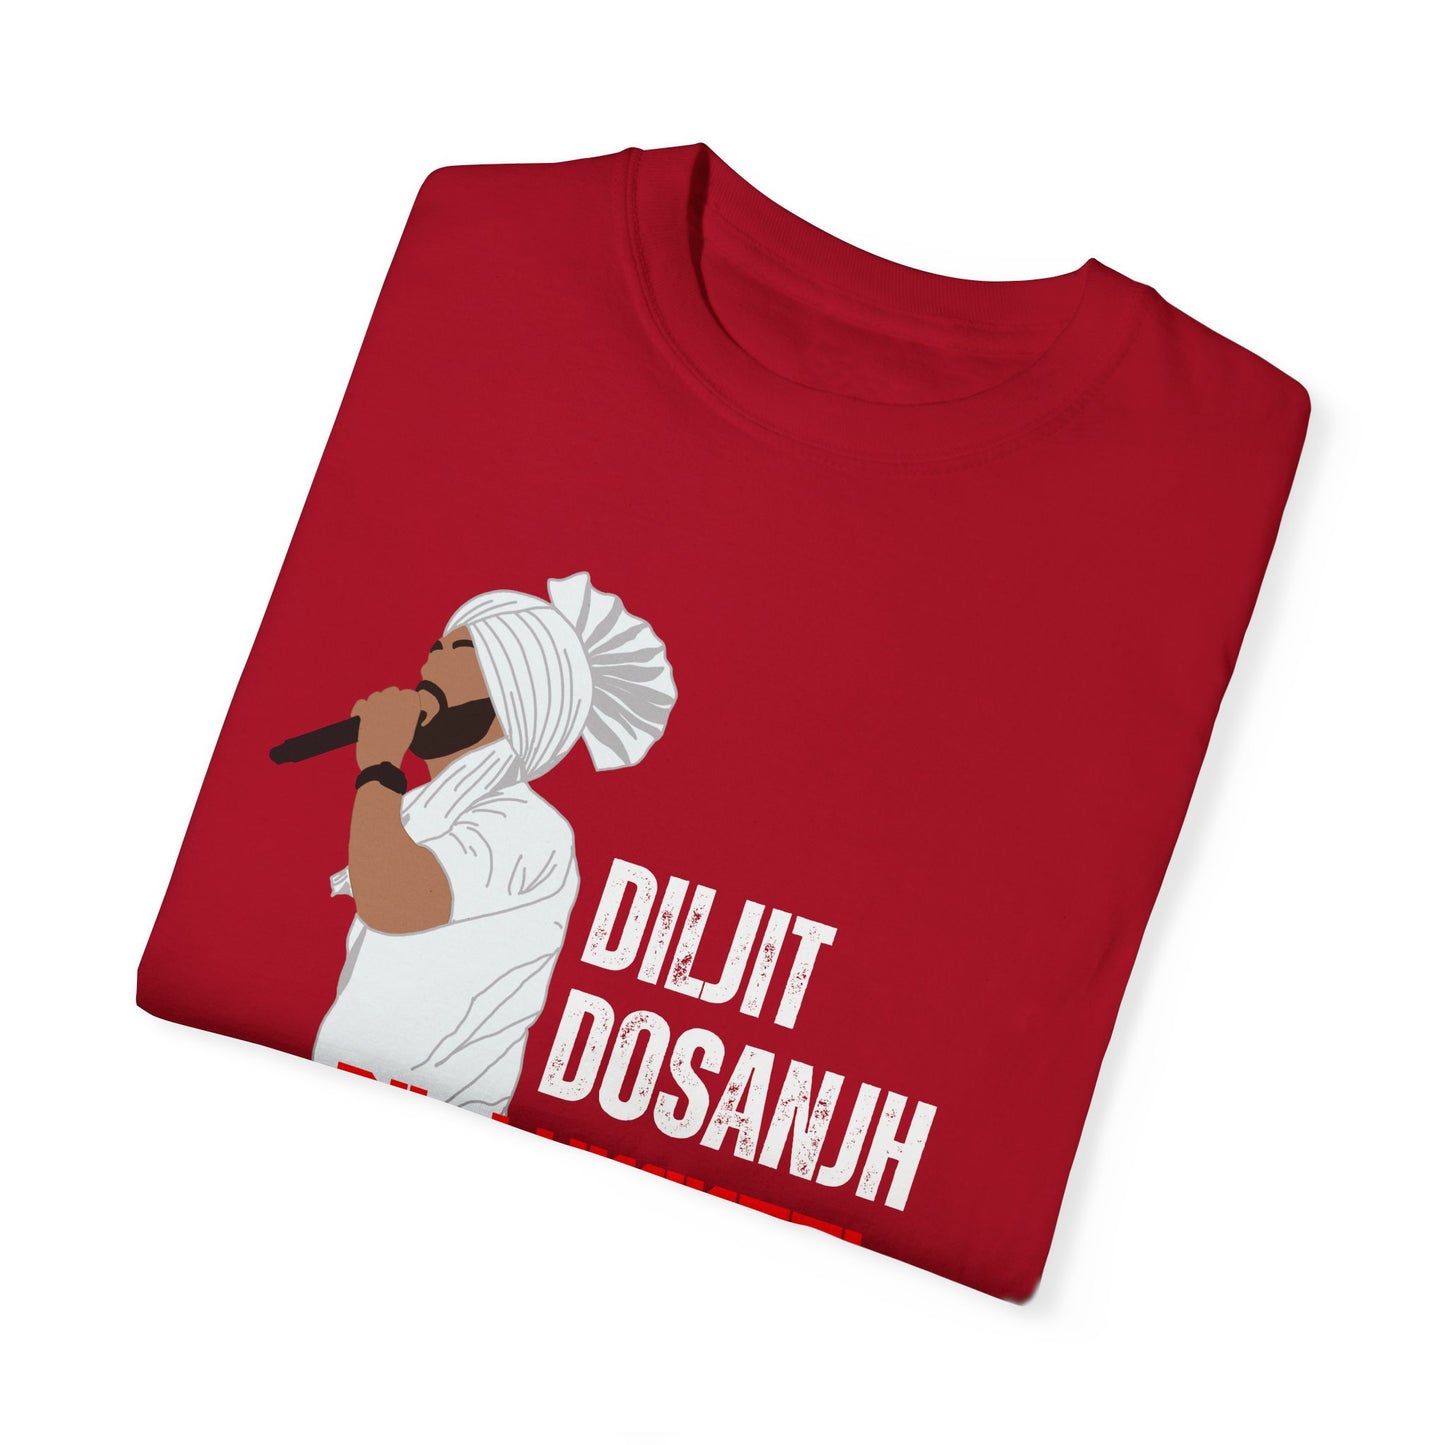 Diljit Dosanjh Dil-Luminati Tour T-Shirt